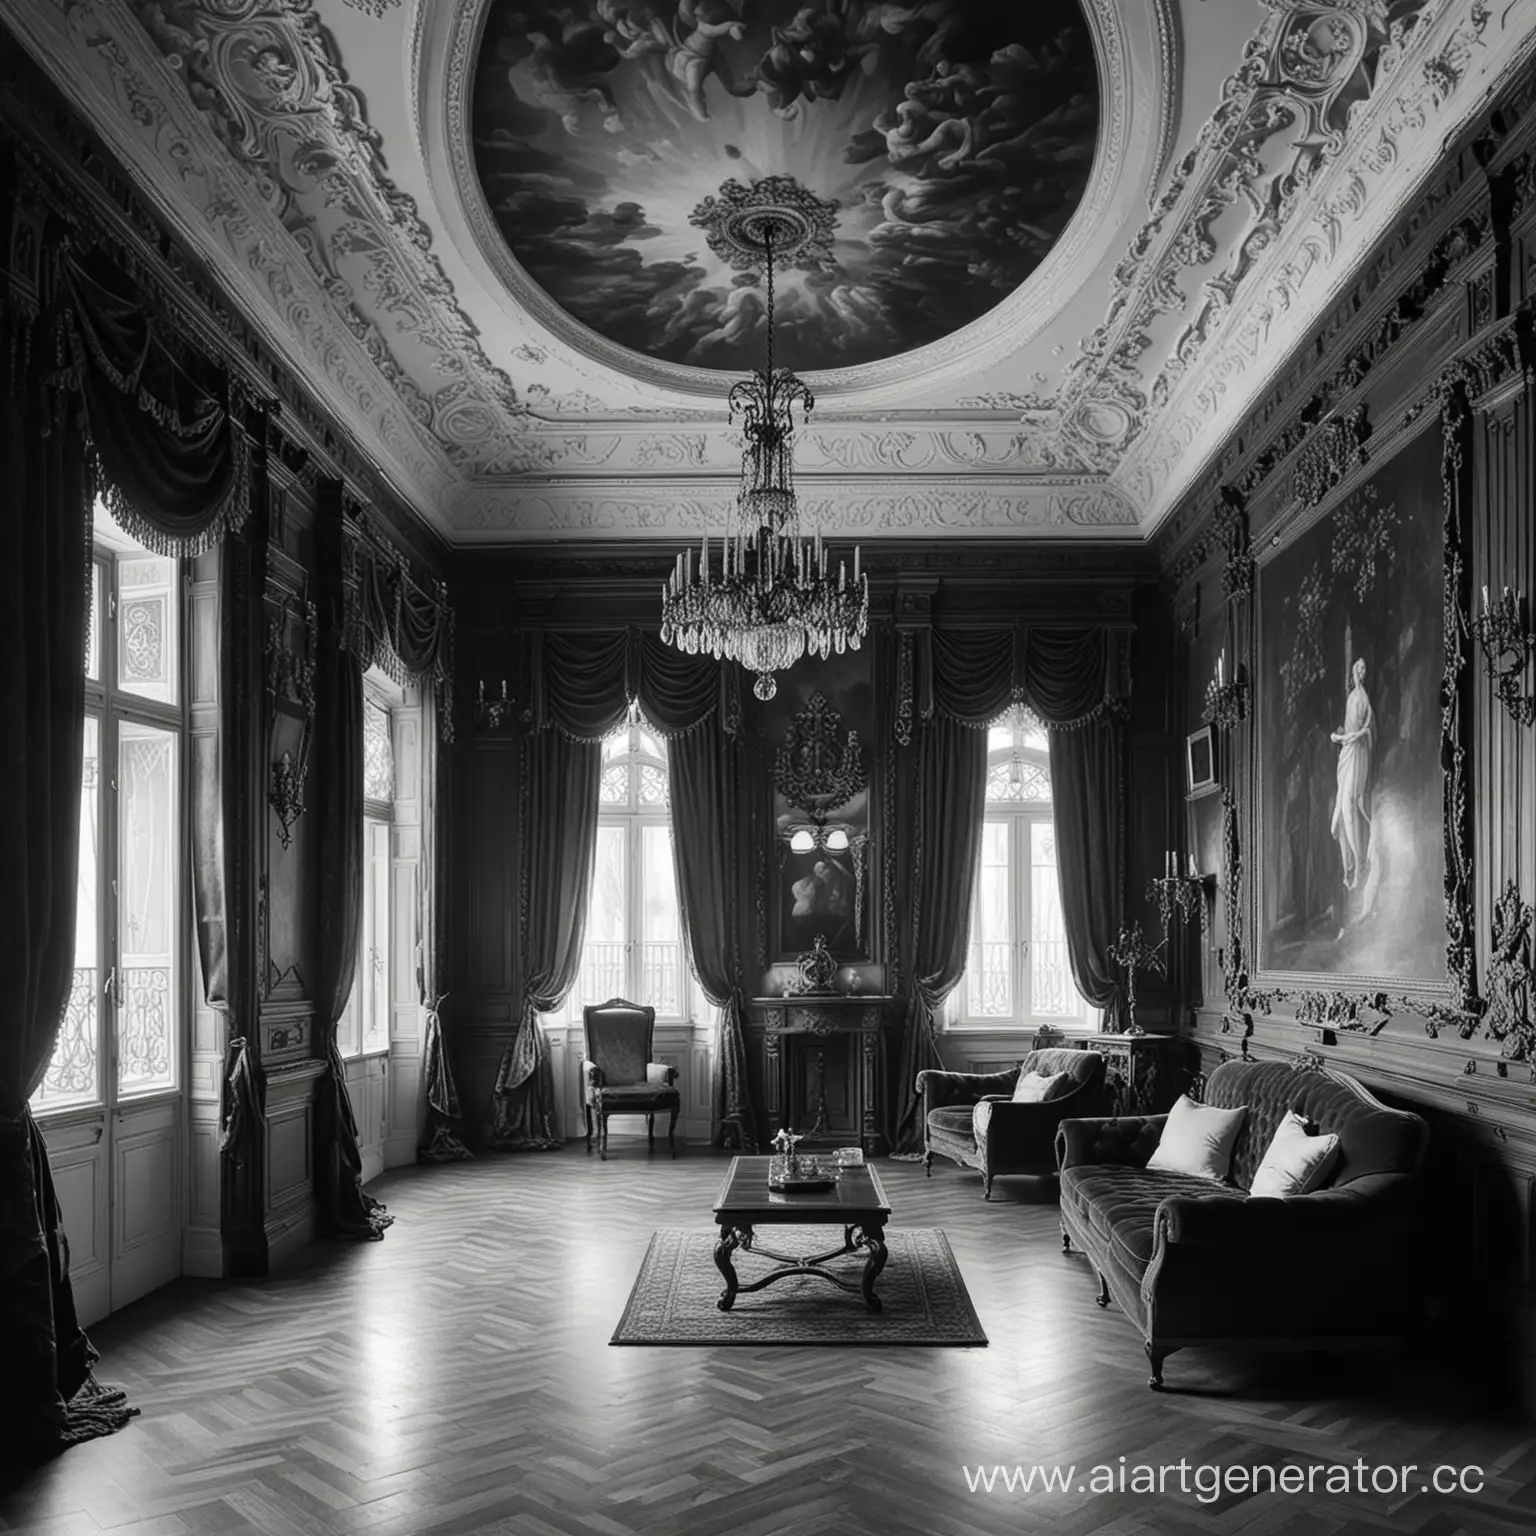 Интерьер комнаты в черно-белом цвете в стиле ренессанса 